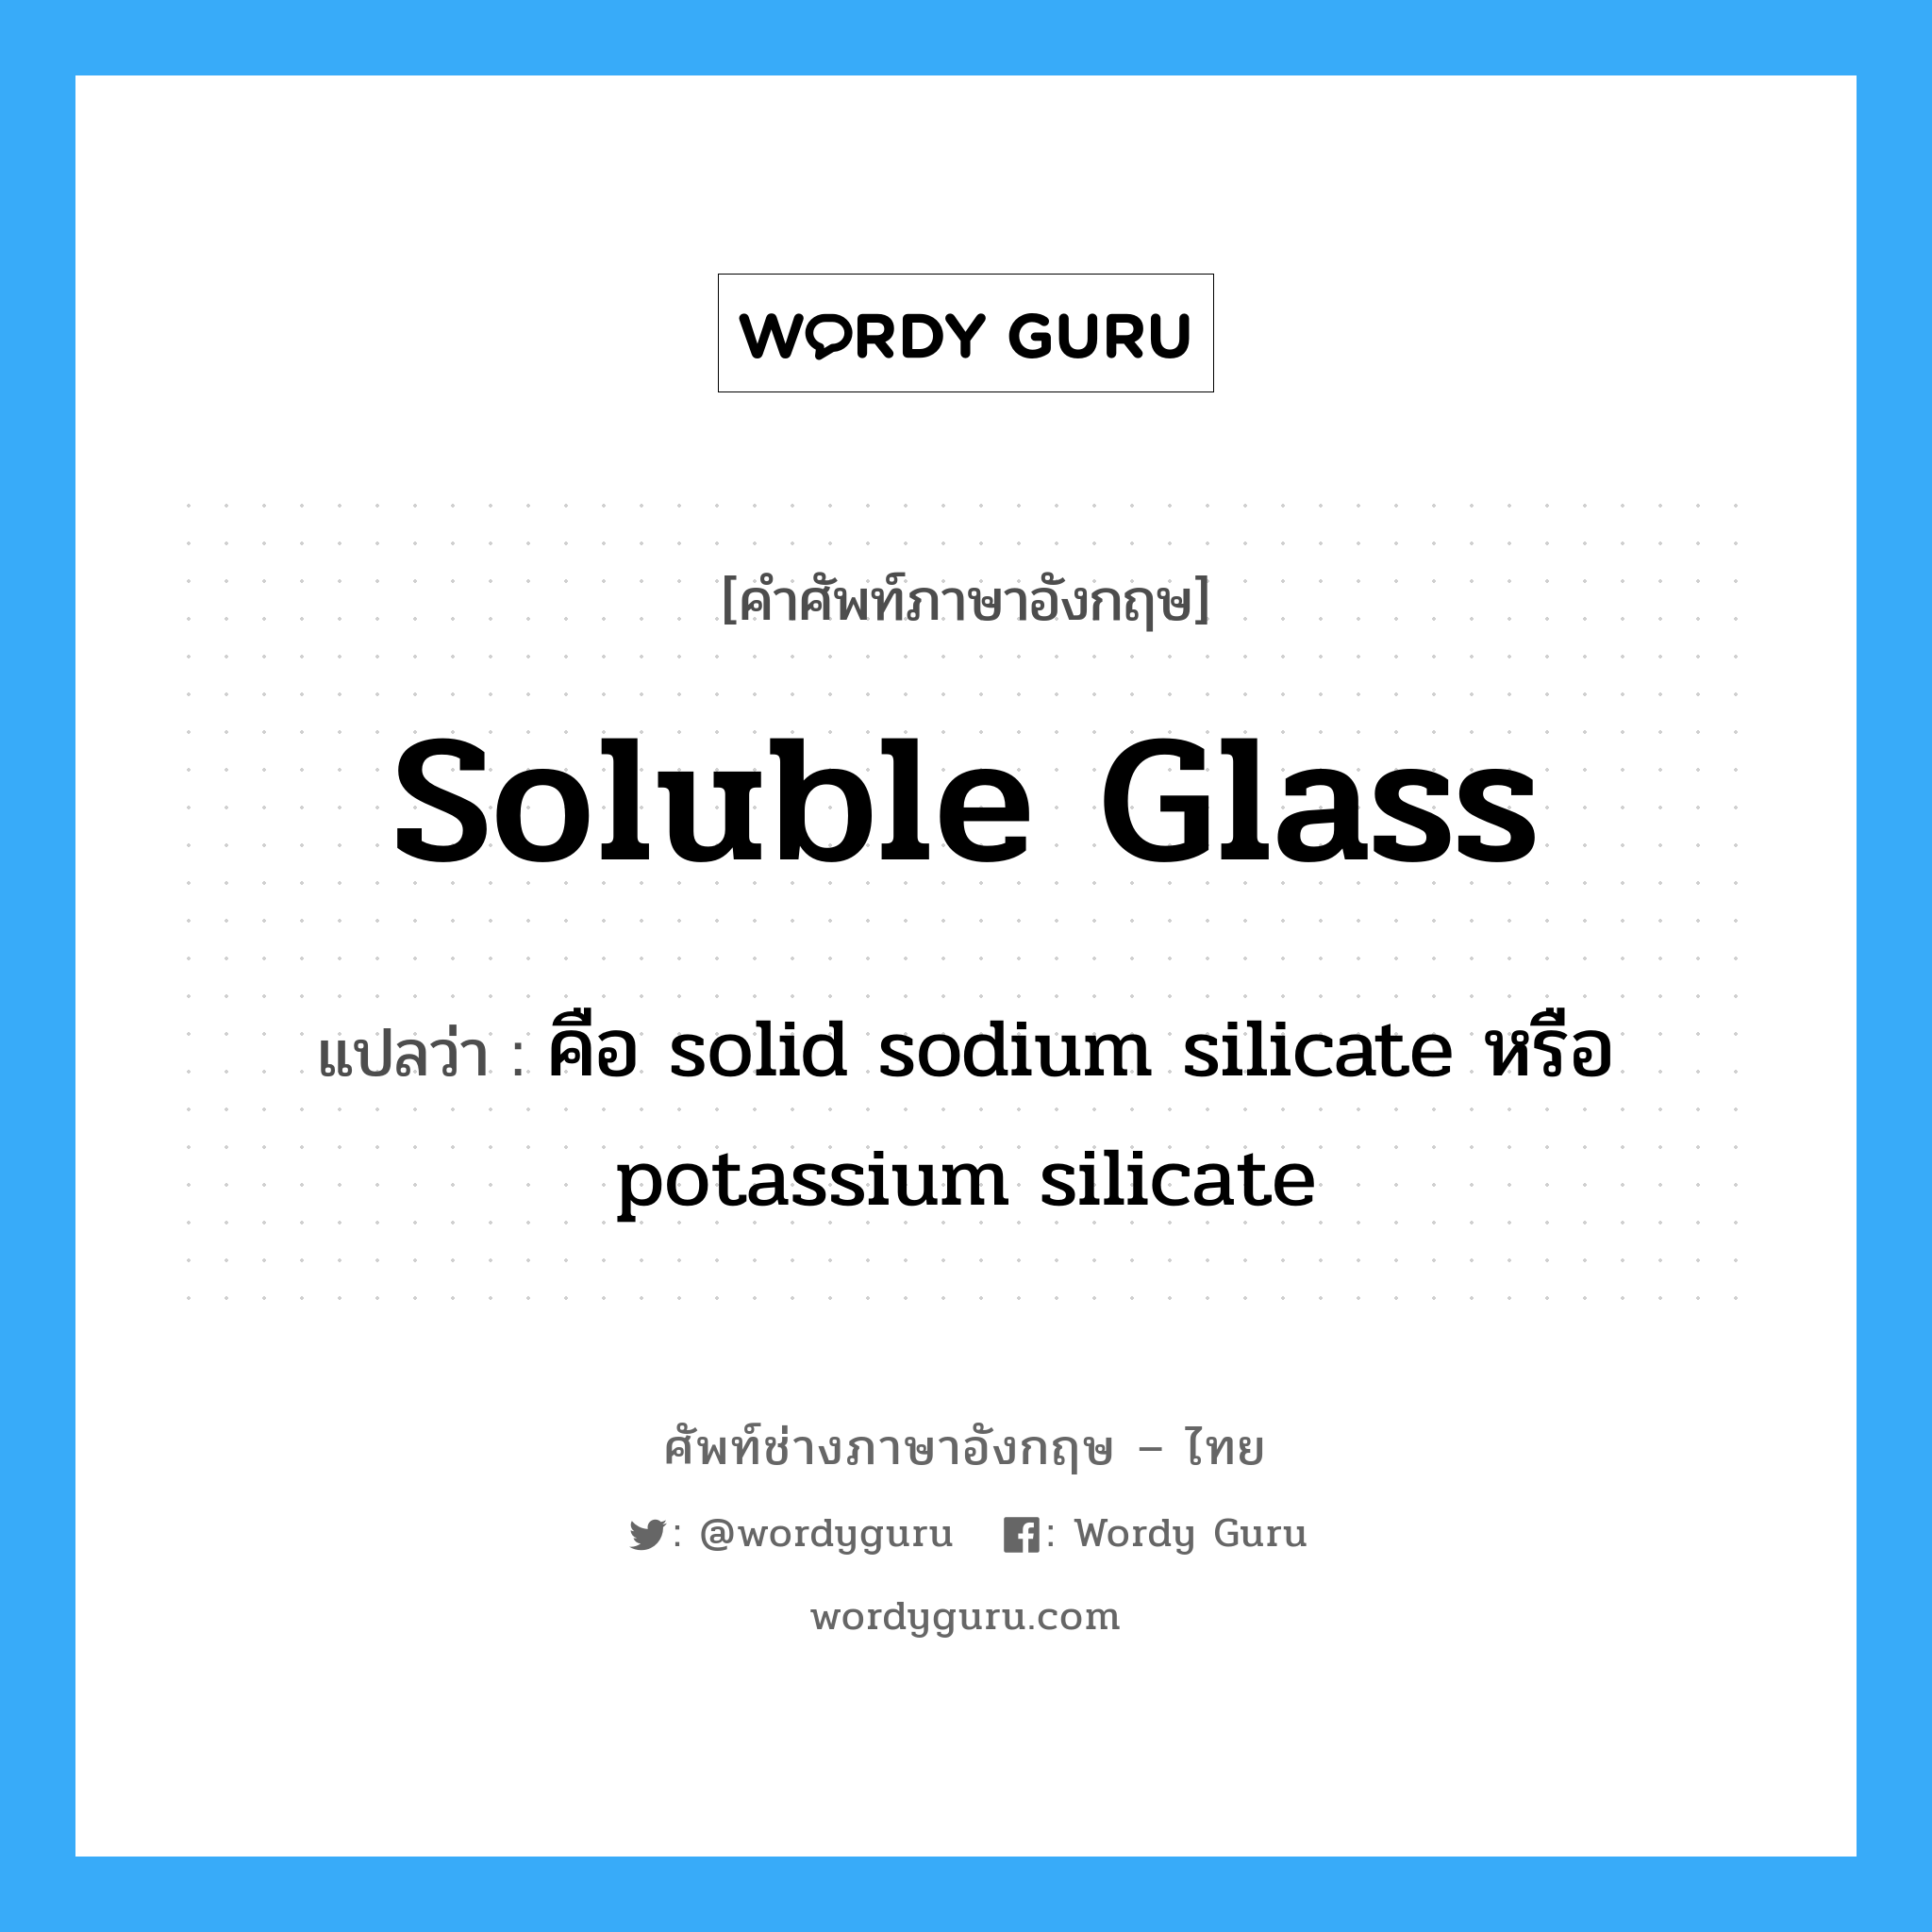 คือ solid sodium silicate หรือ potassium silicate ภาษาอังกฤษ?, คำศัพท์ช่างภาษาอังกฤษ - ไทย คือ solid sodium silicate หรือ potassium silicate คำศัพท์ภาษาอังกฤษ คือ solid sodium silicate หรือ potassium silicate แปลว่า soluble glass